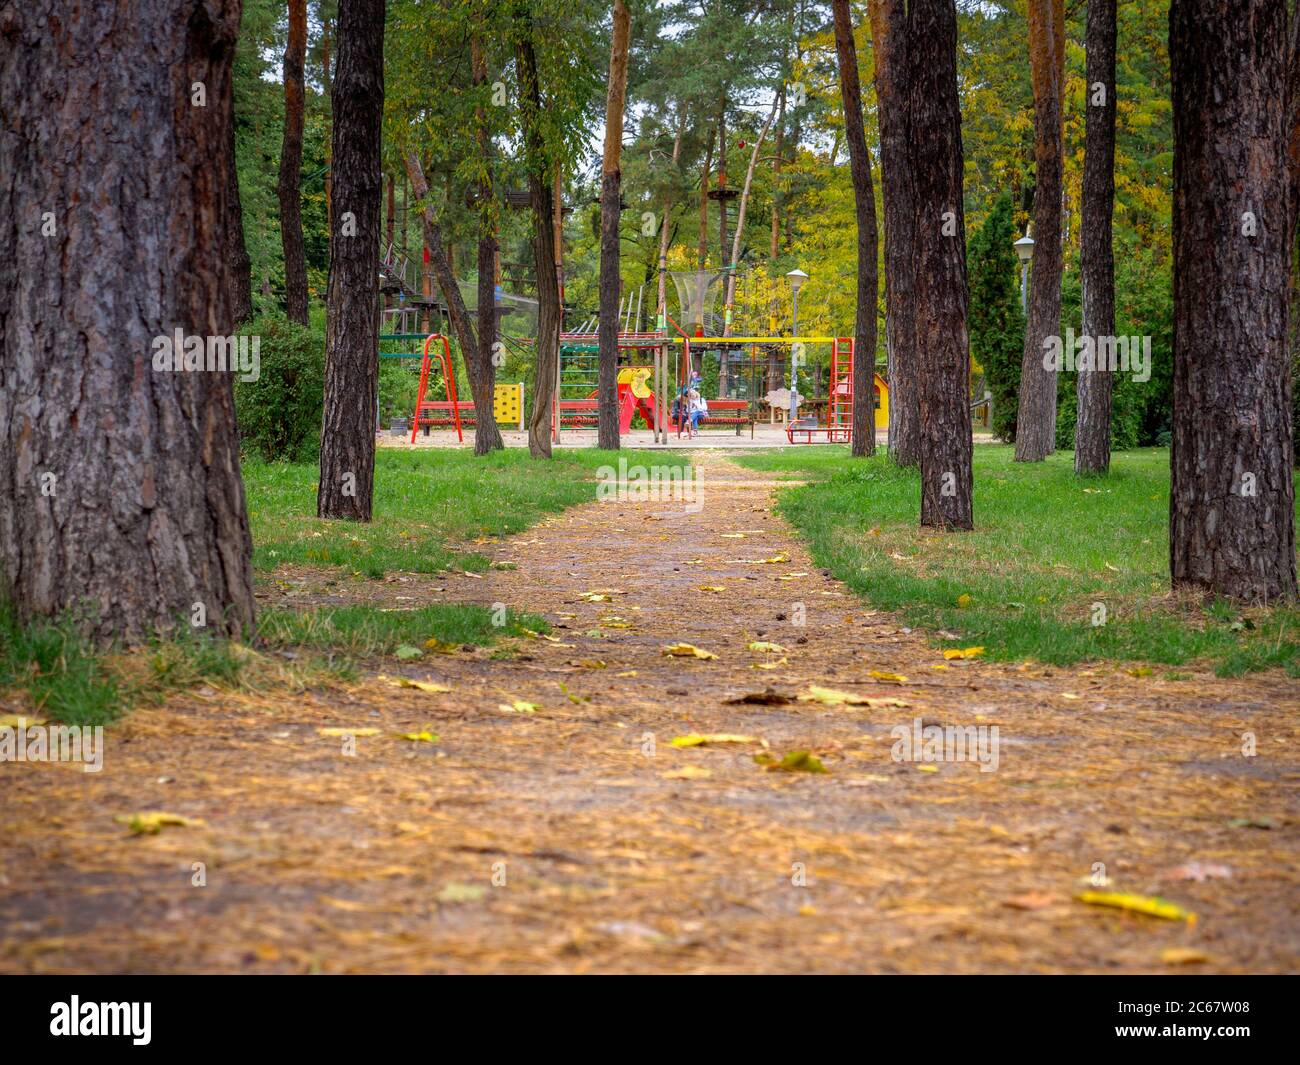 Vue sur un sentier de parc avec des feuilles jaunes et des aiguilles de sapin menant à une aire de jeux pour enfants colorée et un parc à cordes. Les enfants jouent, les gens s'assoient Banque D'Images